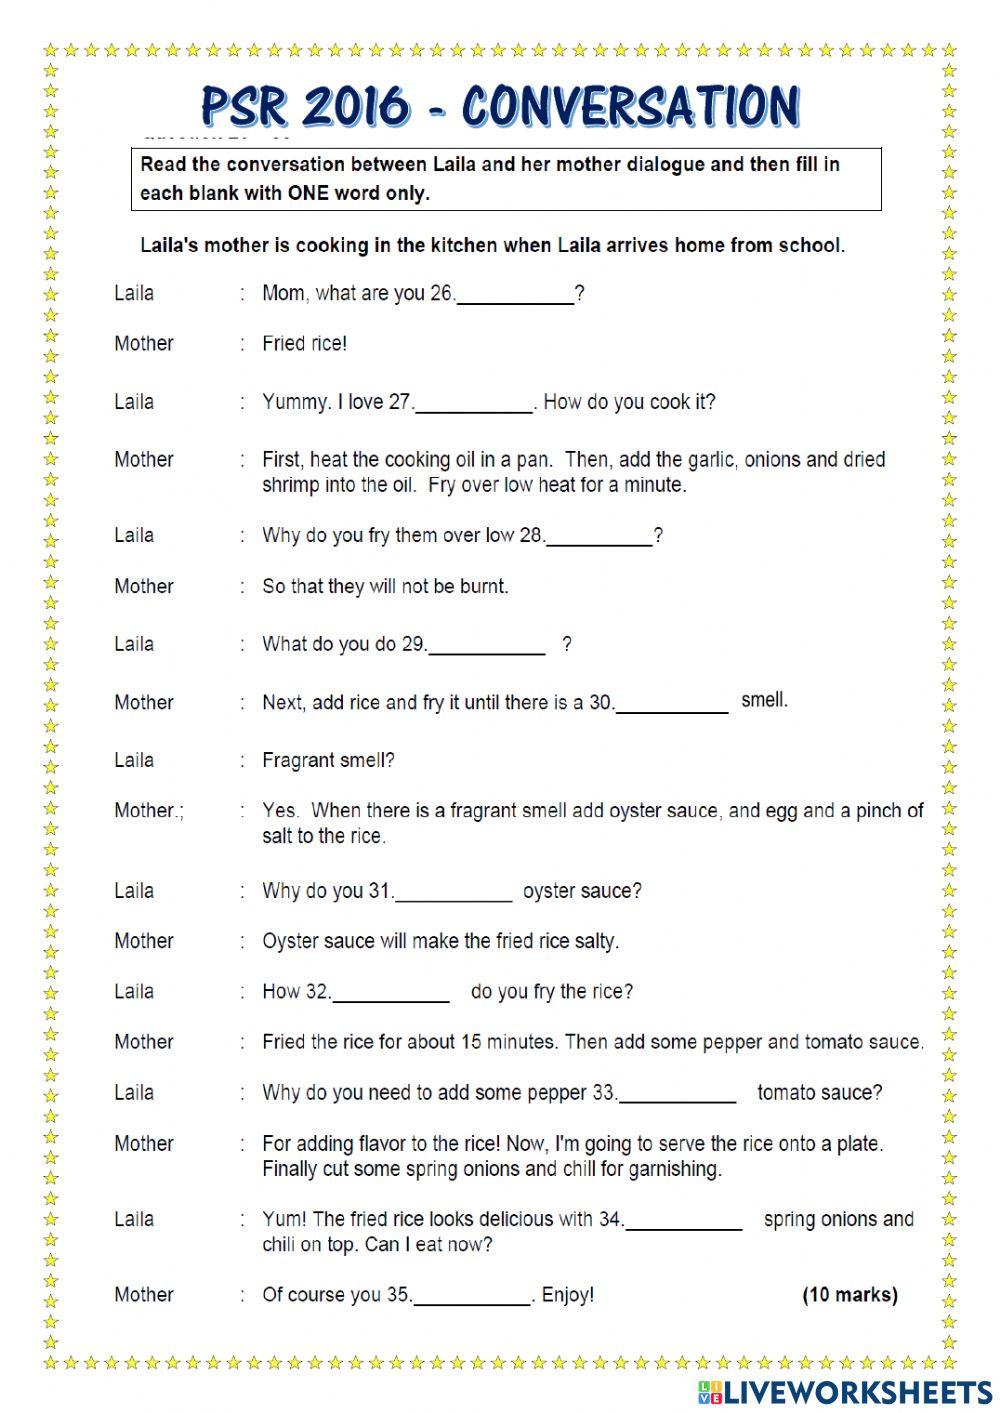 Conversation online worksheet for Grade 5-6 | Live Worksheets